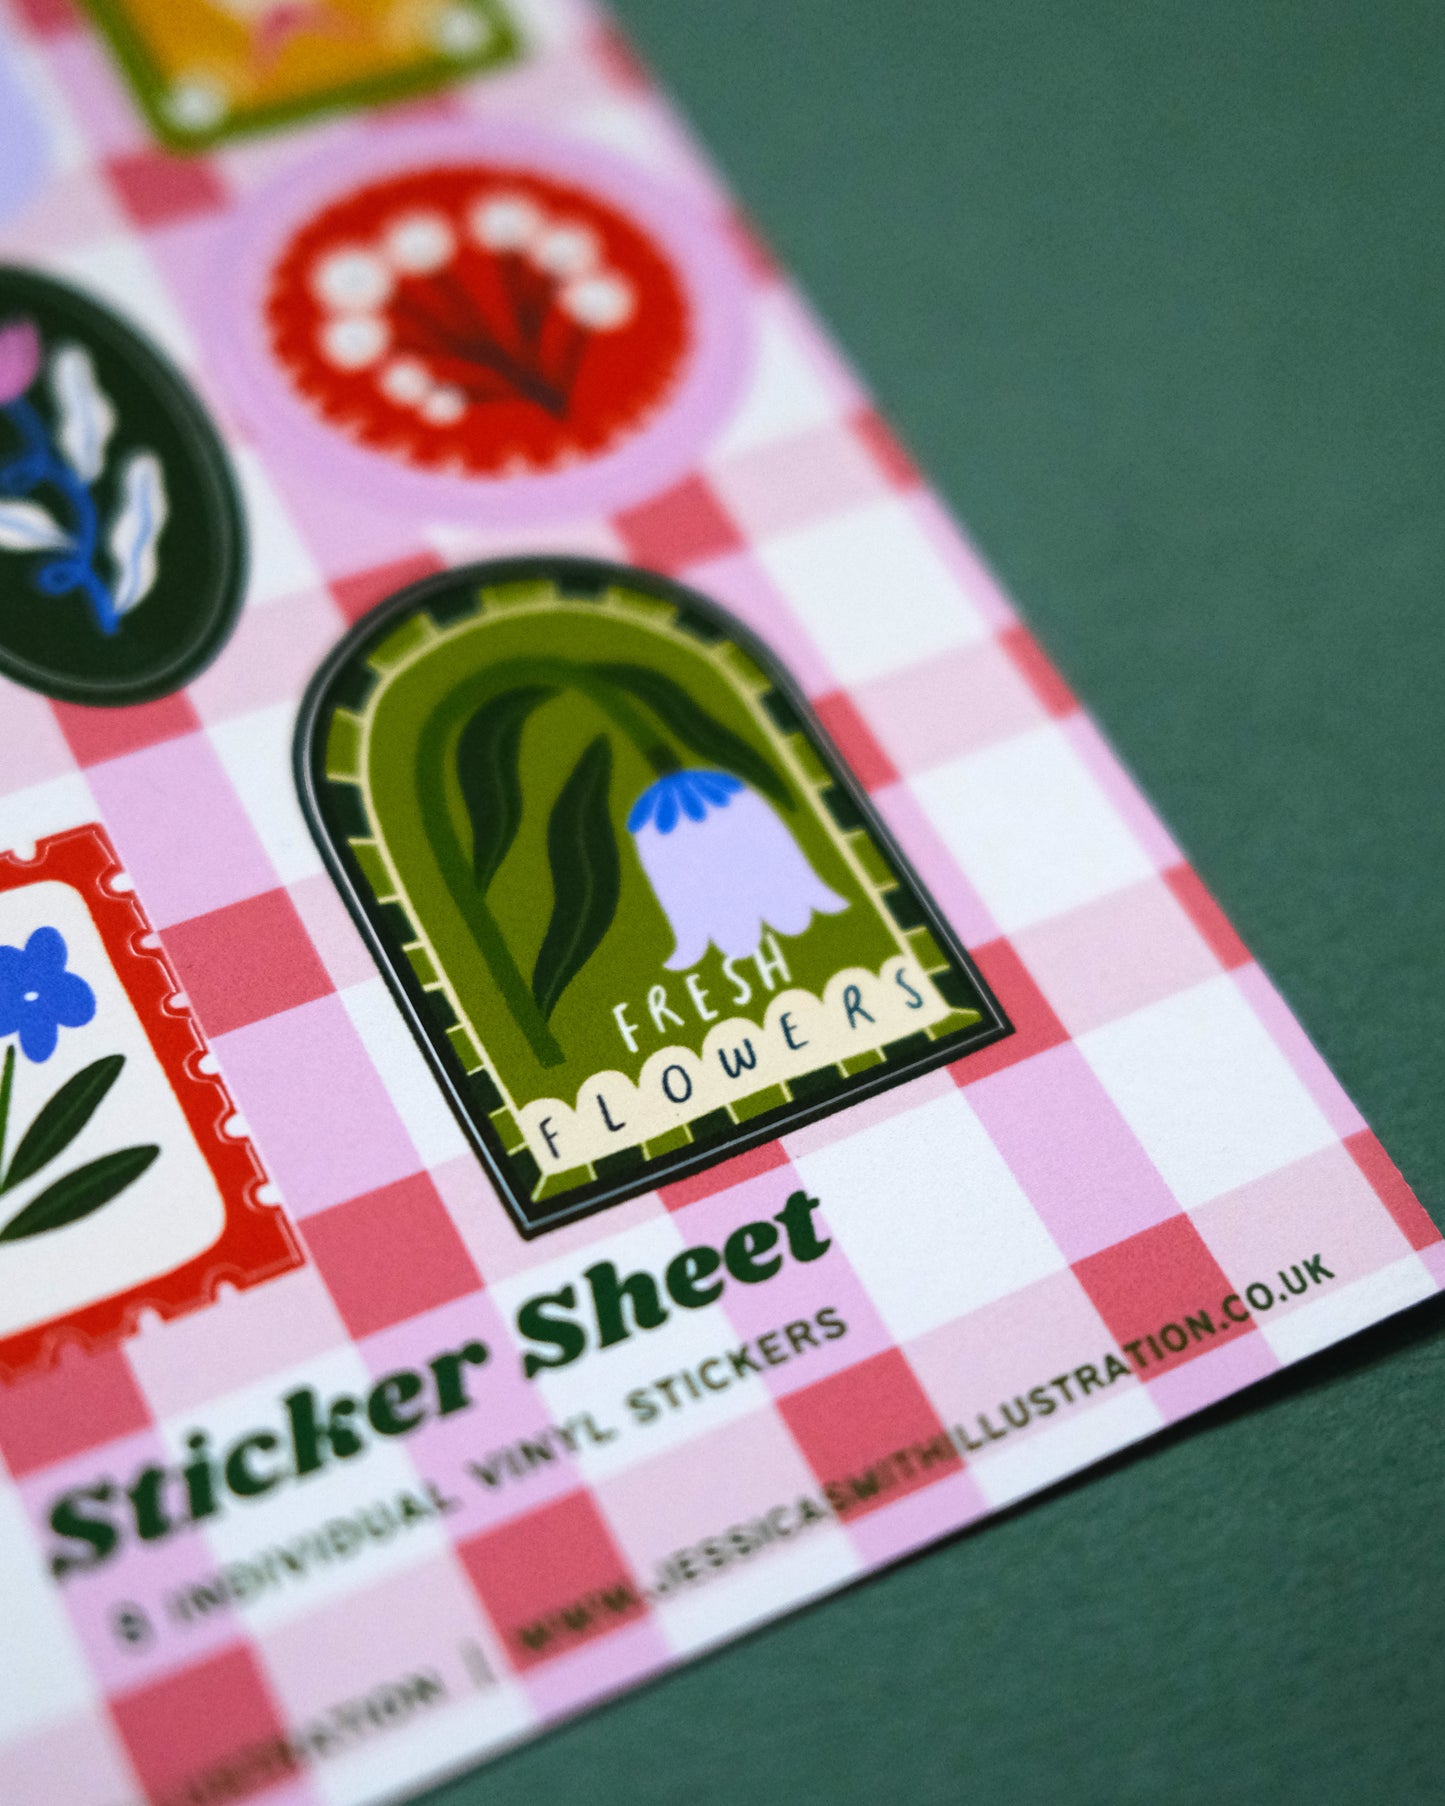 Stamp Sticker Sheet